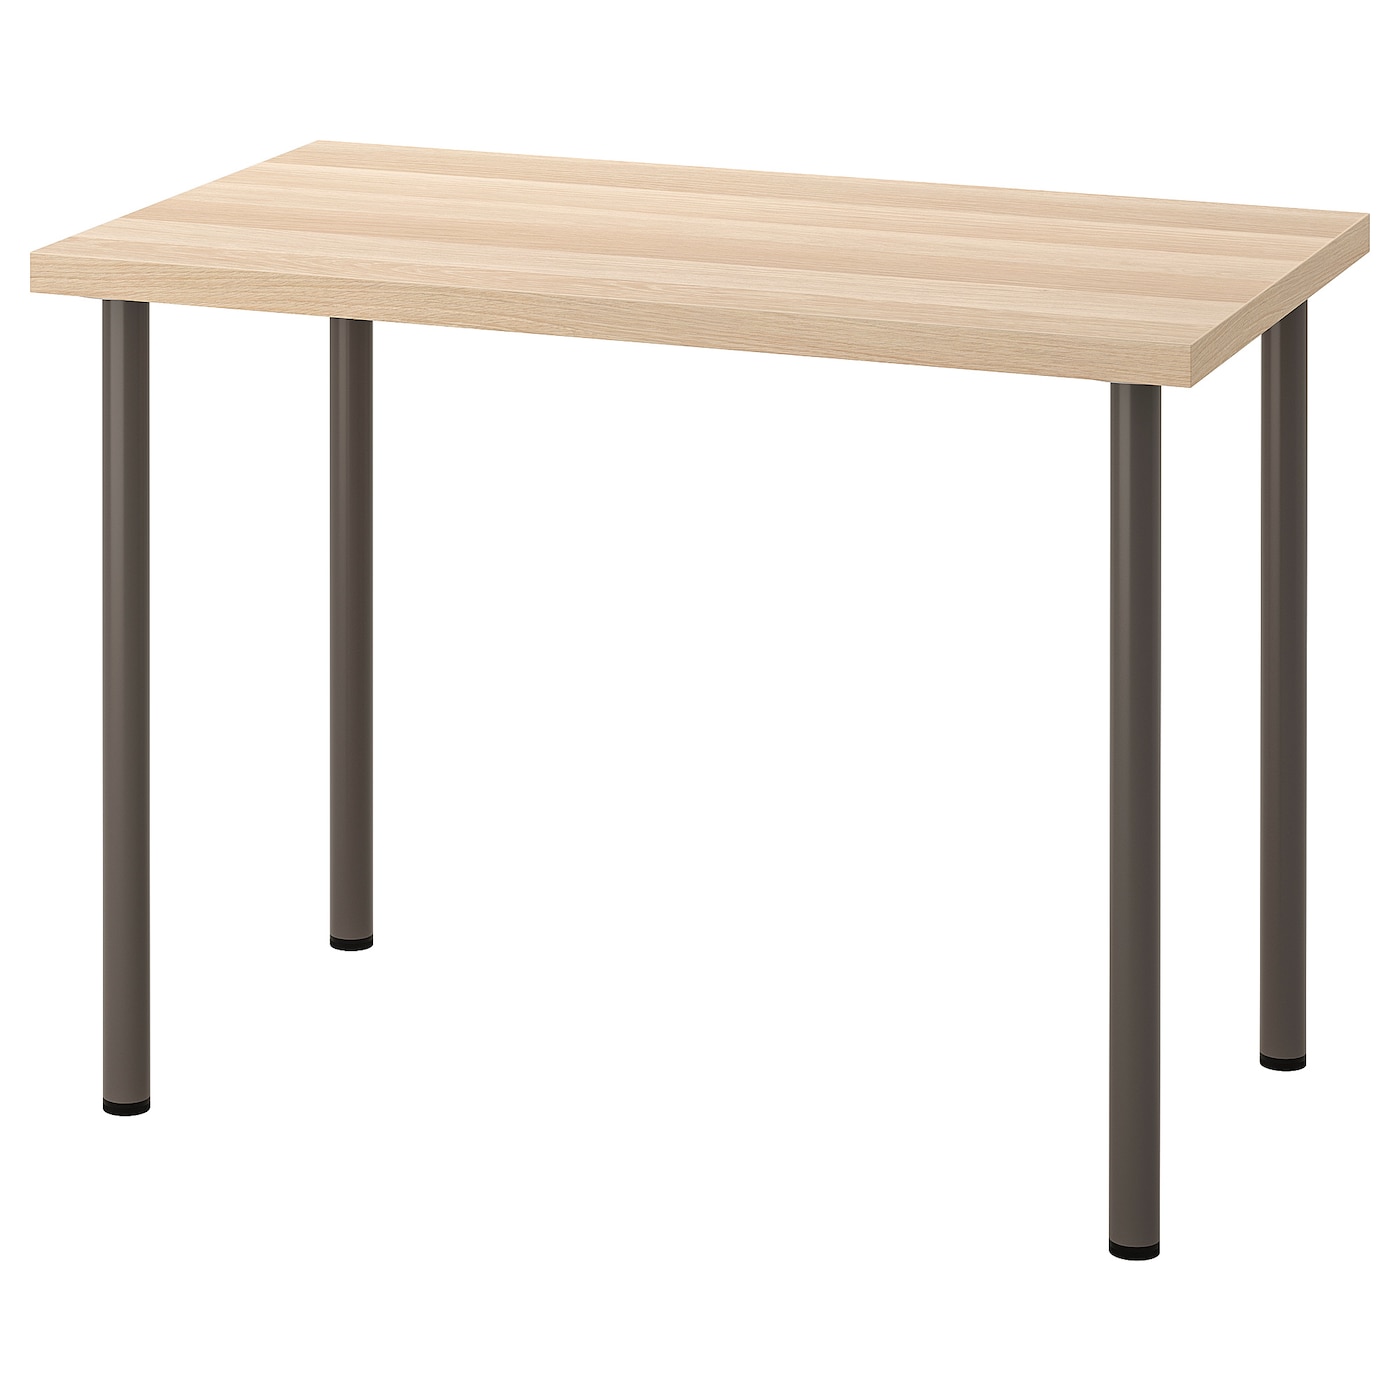 Письменный стол - IKEA LINNMON/ADILS, 100х60 см, под беленый дуб/черный, ЛИННМОН/АДИЛЬС ИКЕА